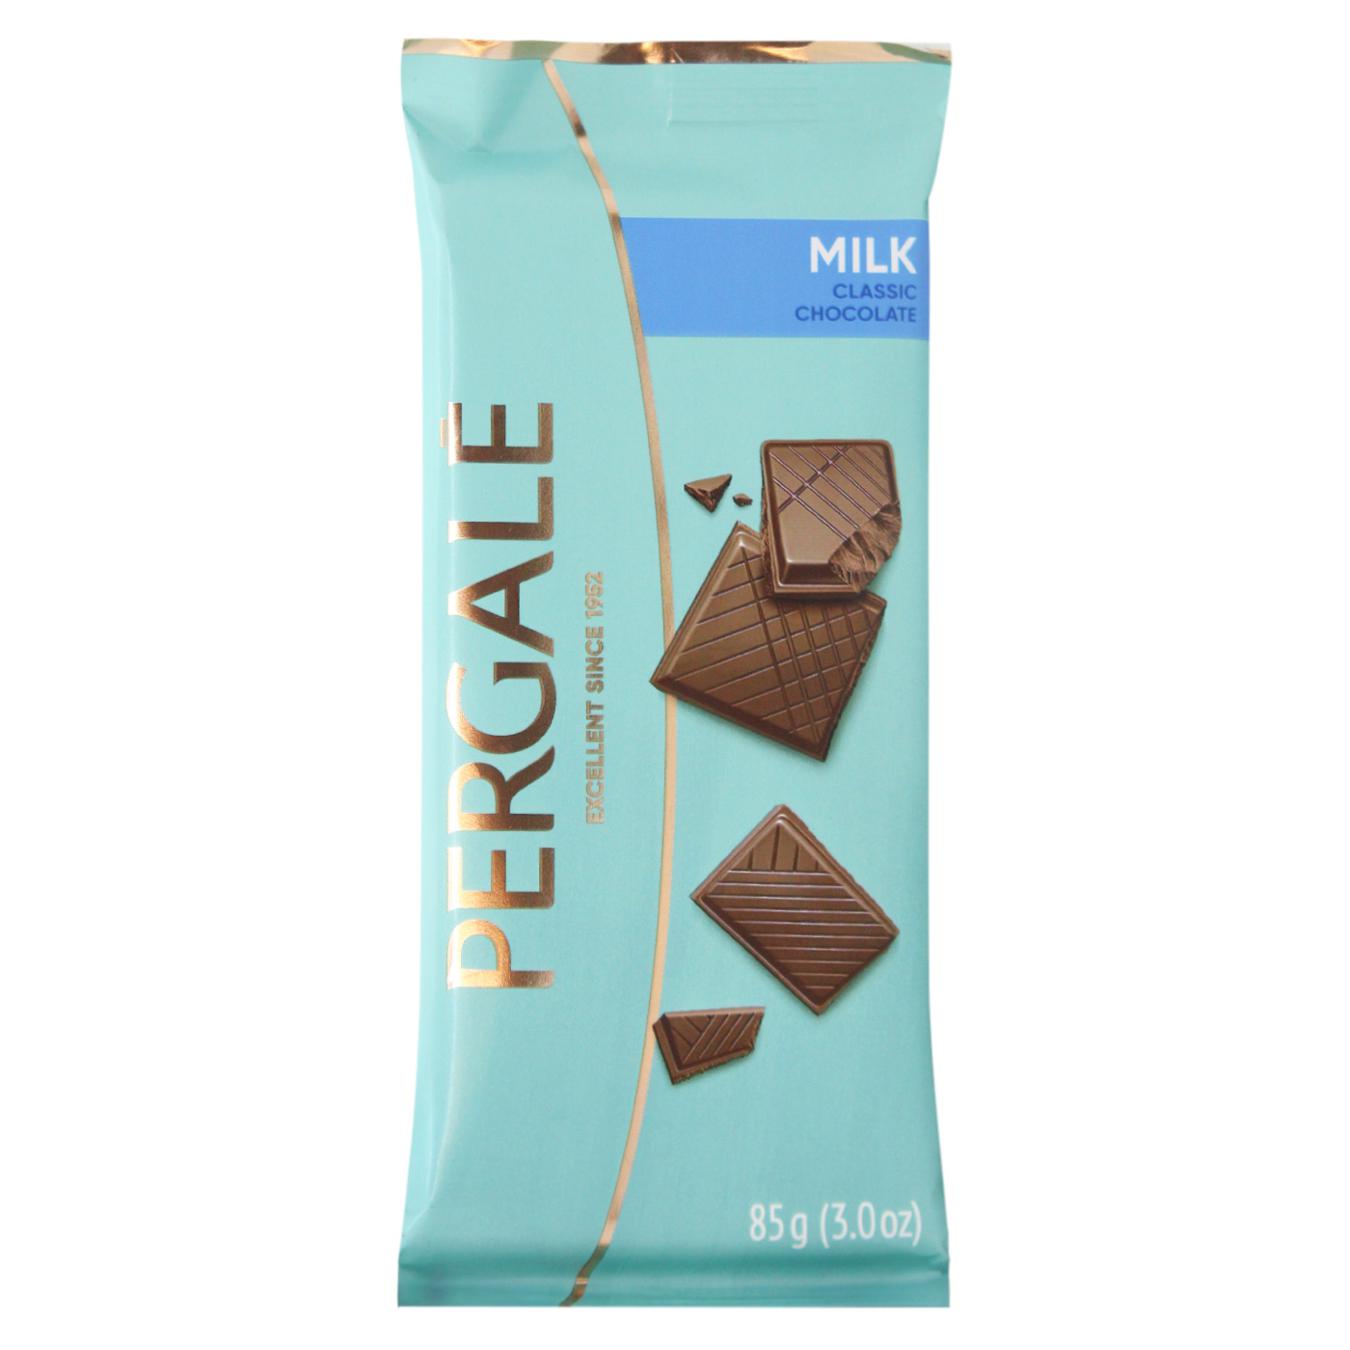 Pergale milk chocolate 85g